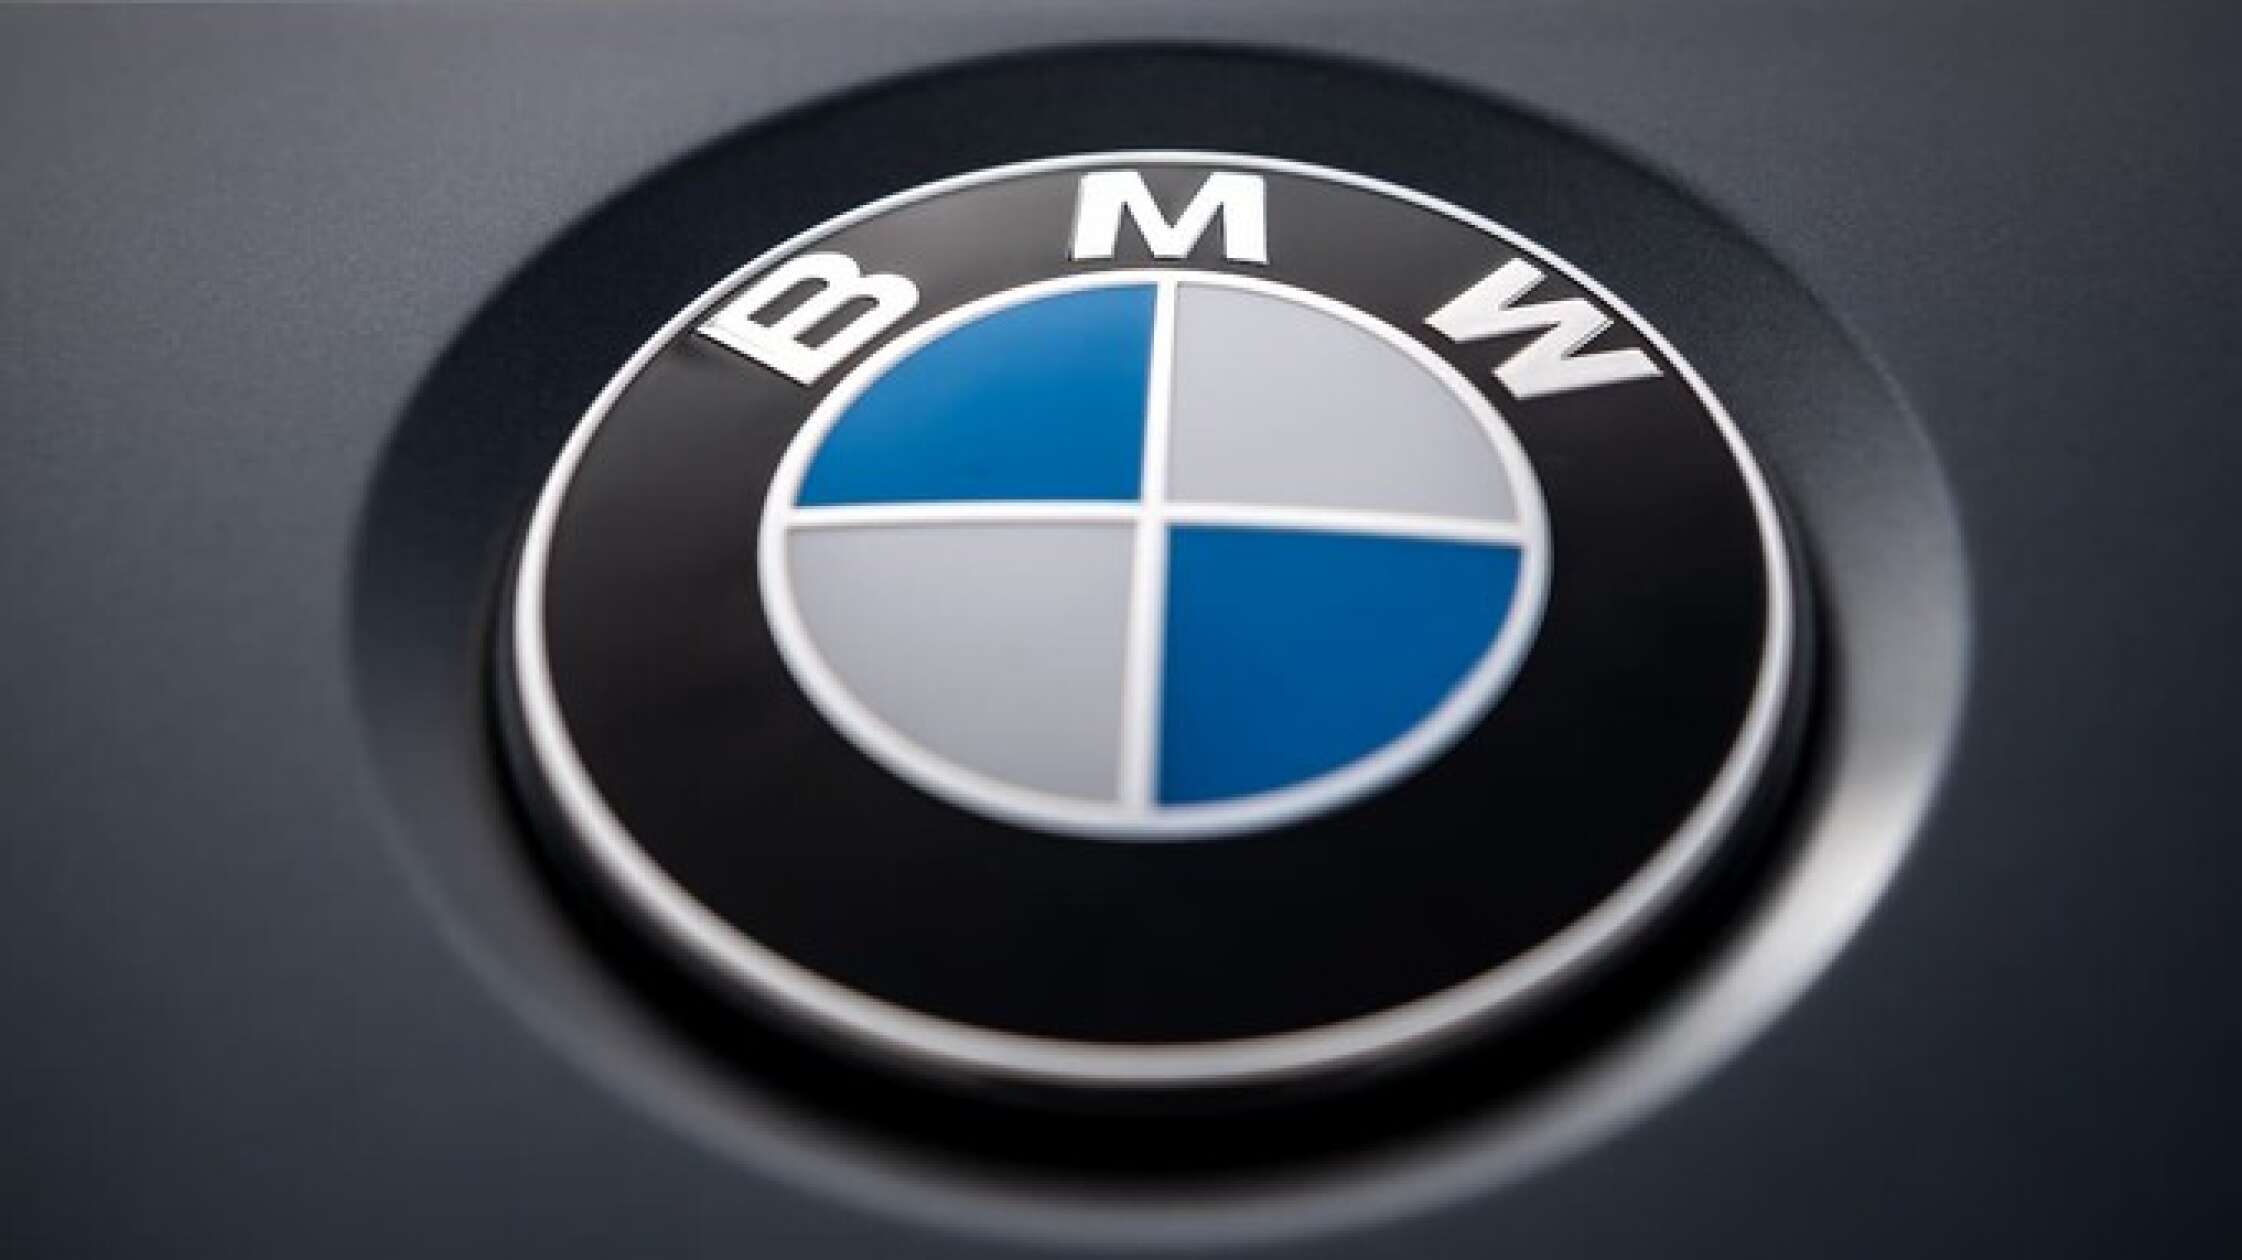 BMW bietet Blitzerwarner zum Freischalten an